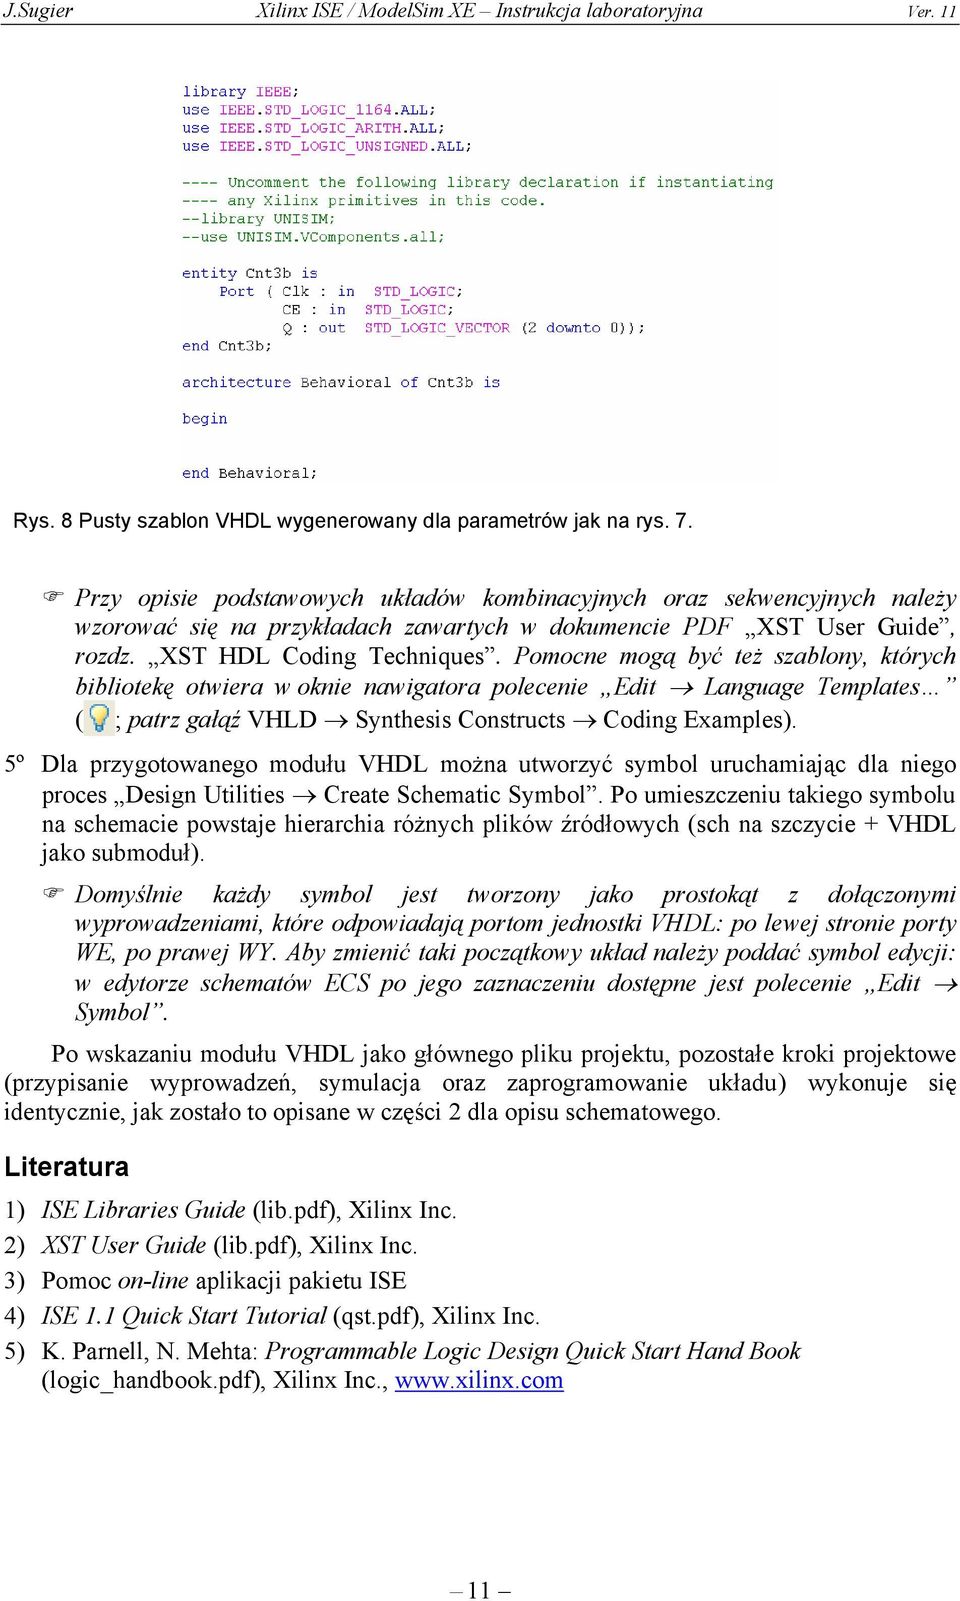 Pomocne mogą być też szablony, których bibliotekę otwiera w oknie nawigatora polecenie Edit Language Templates ( ; patrz gałąź VHLD Synthesis Constructs Coding Examples).